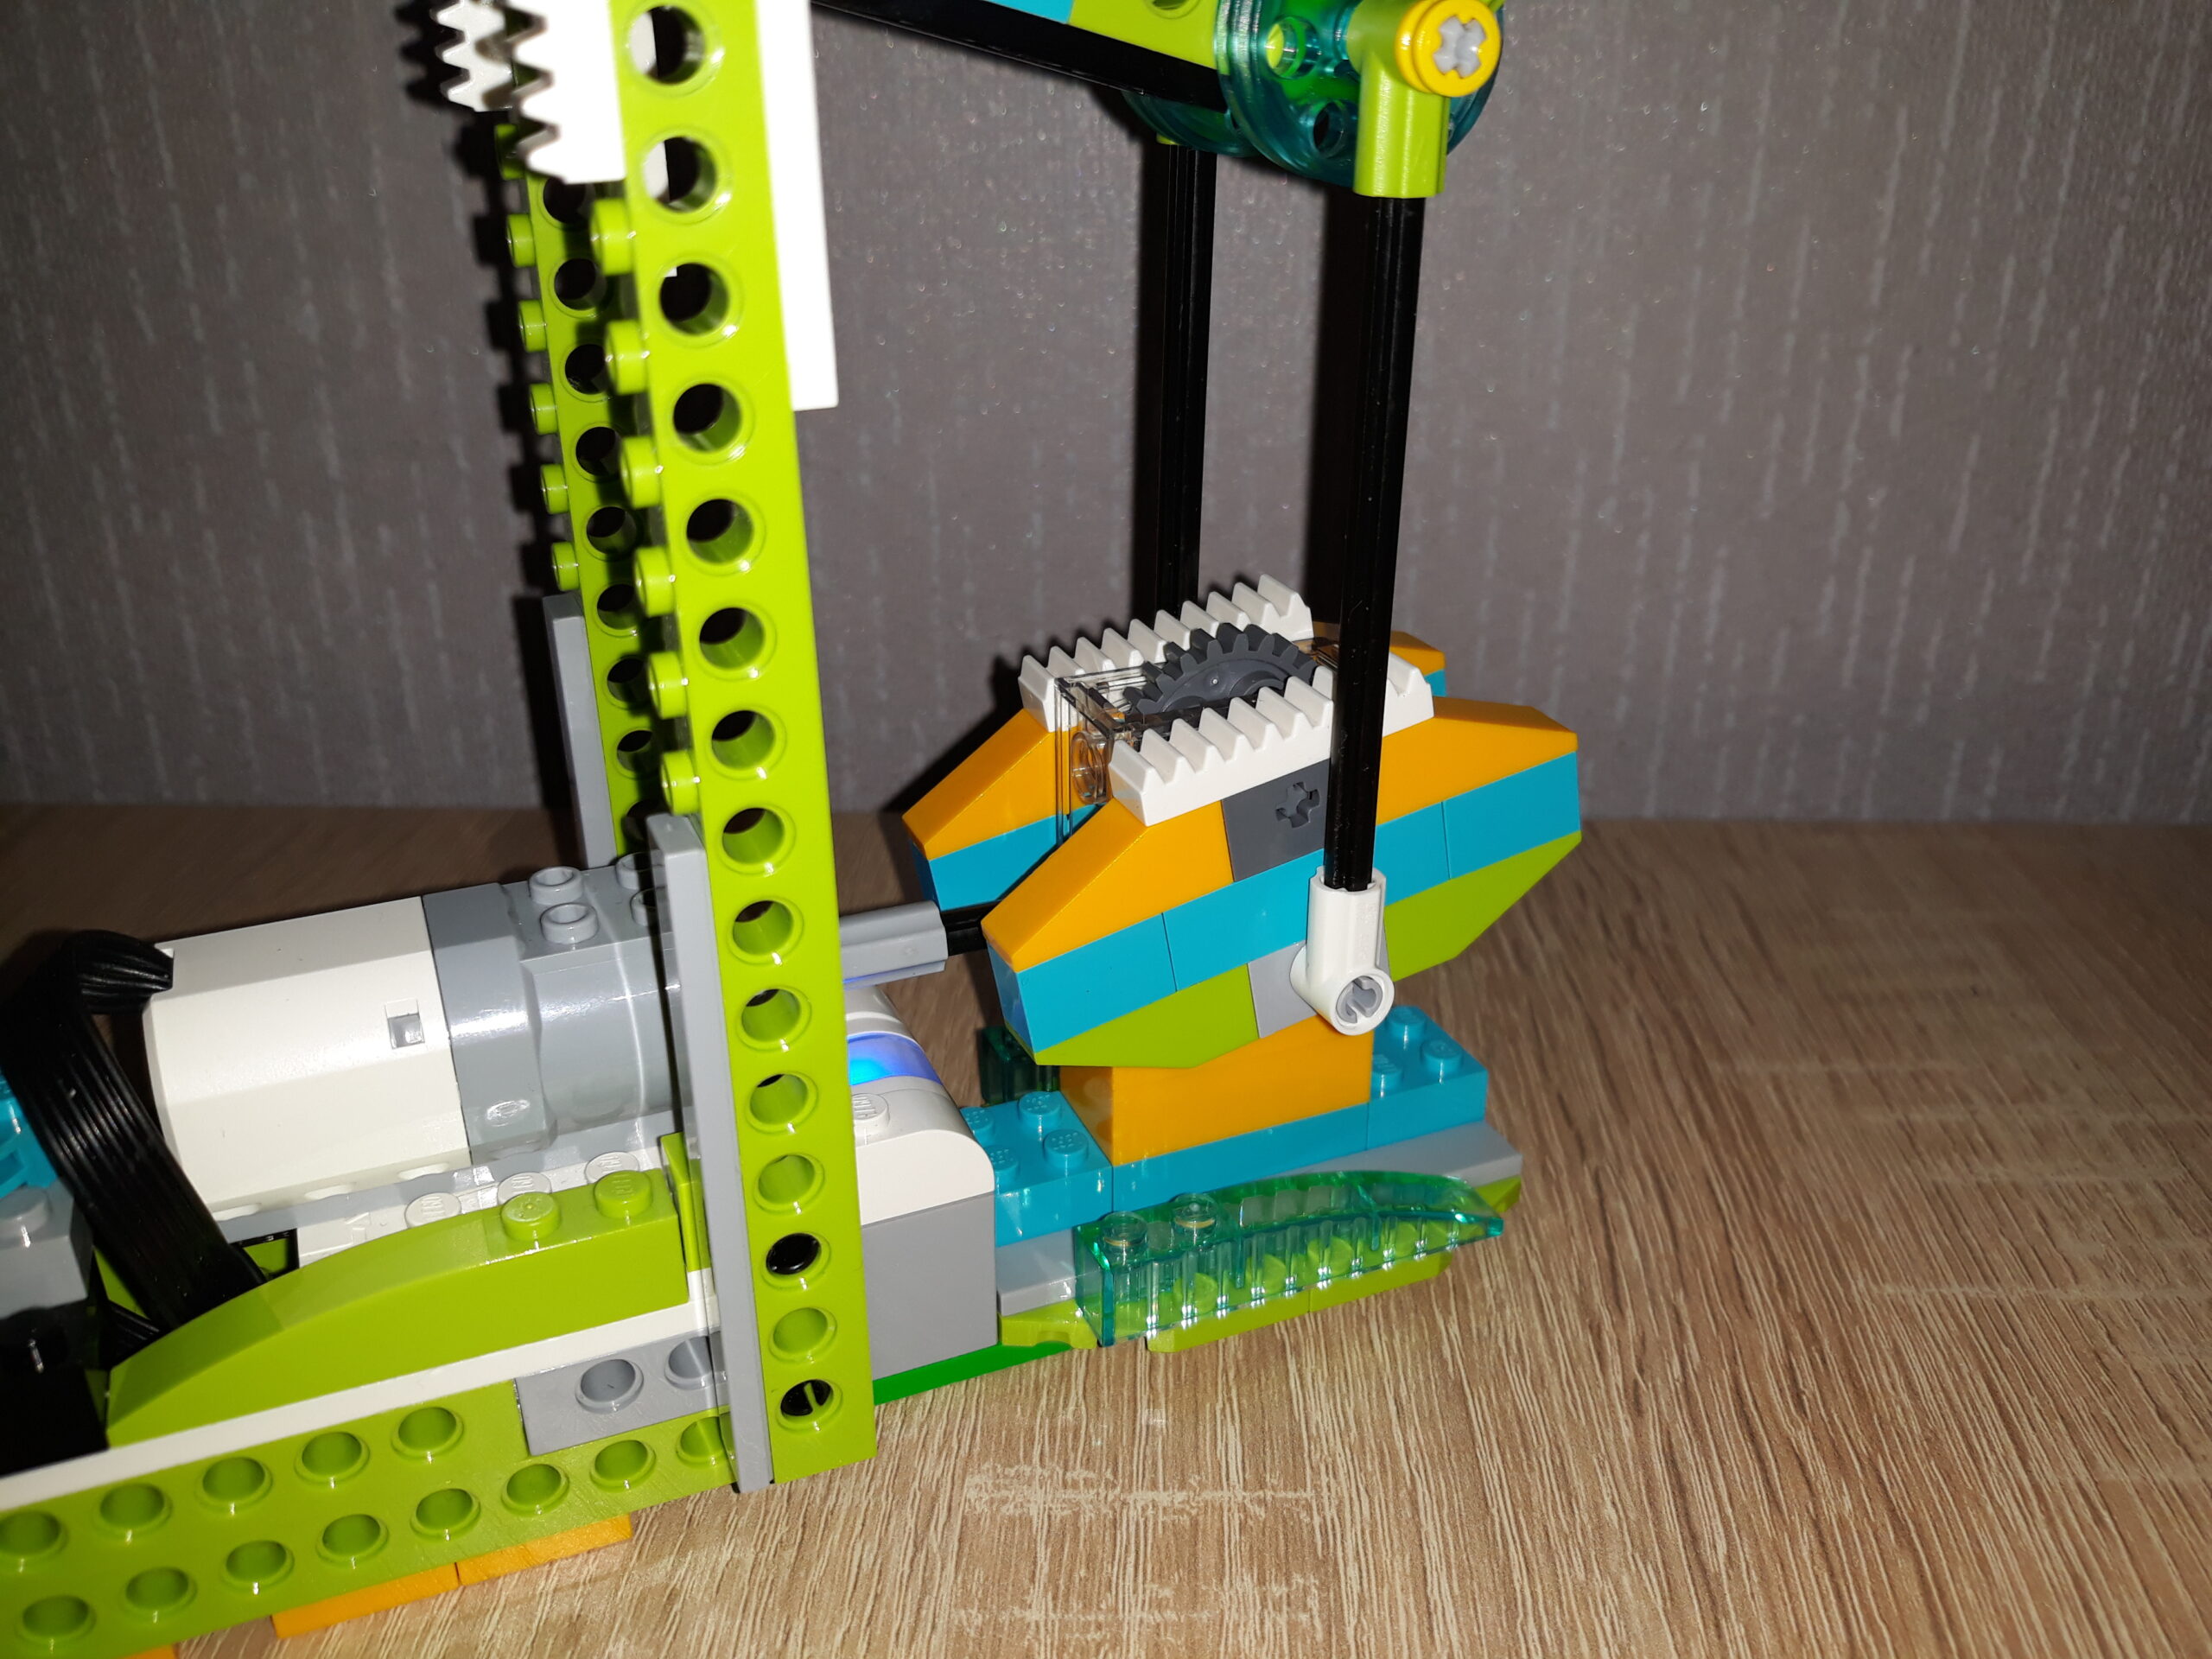 Инструкция по сборке из набора LEGO Education WeDo 2.0 Нефтяная вышка 2